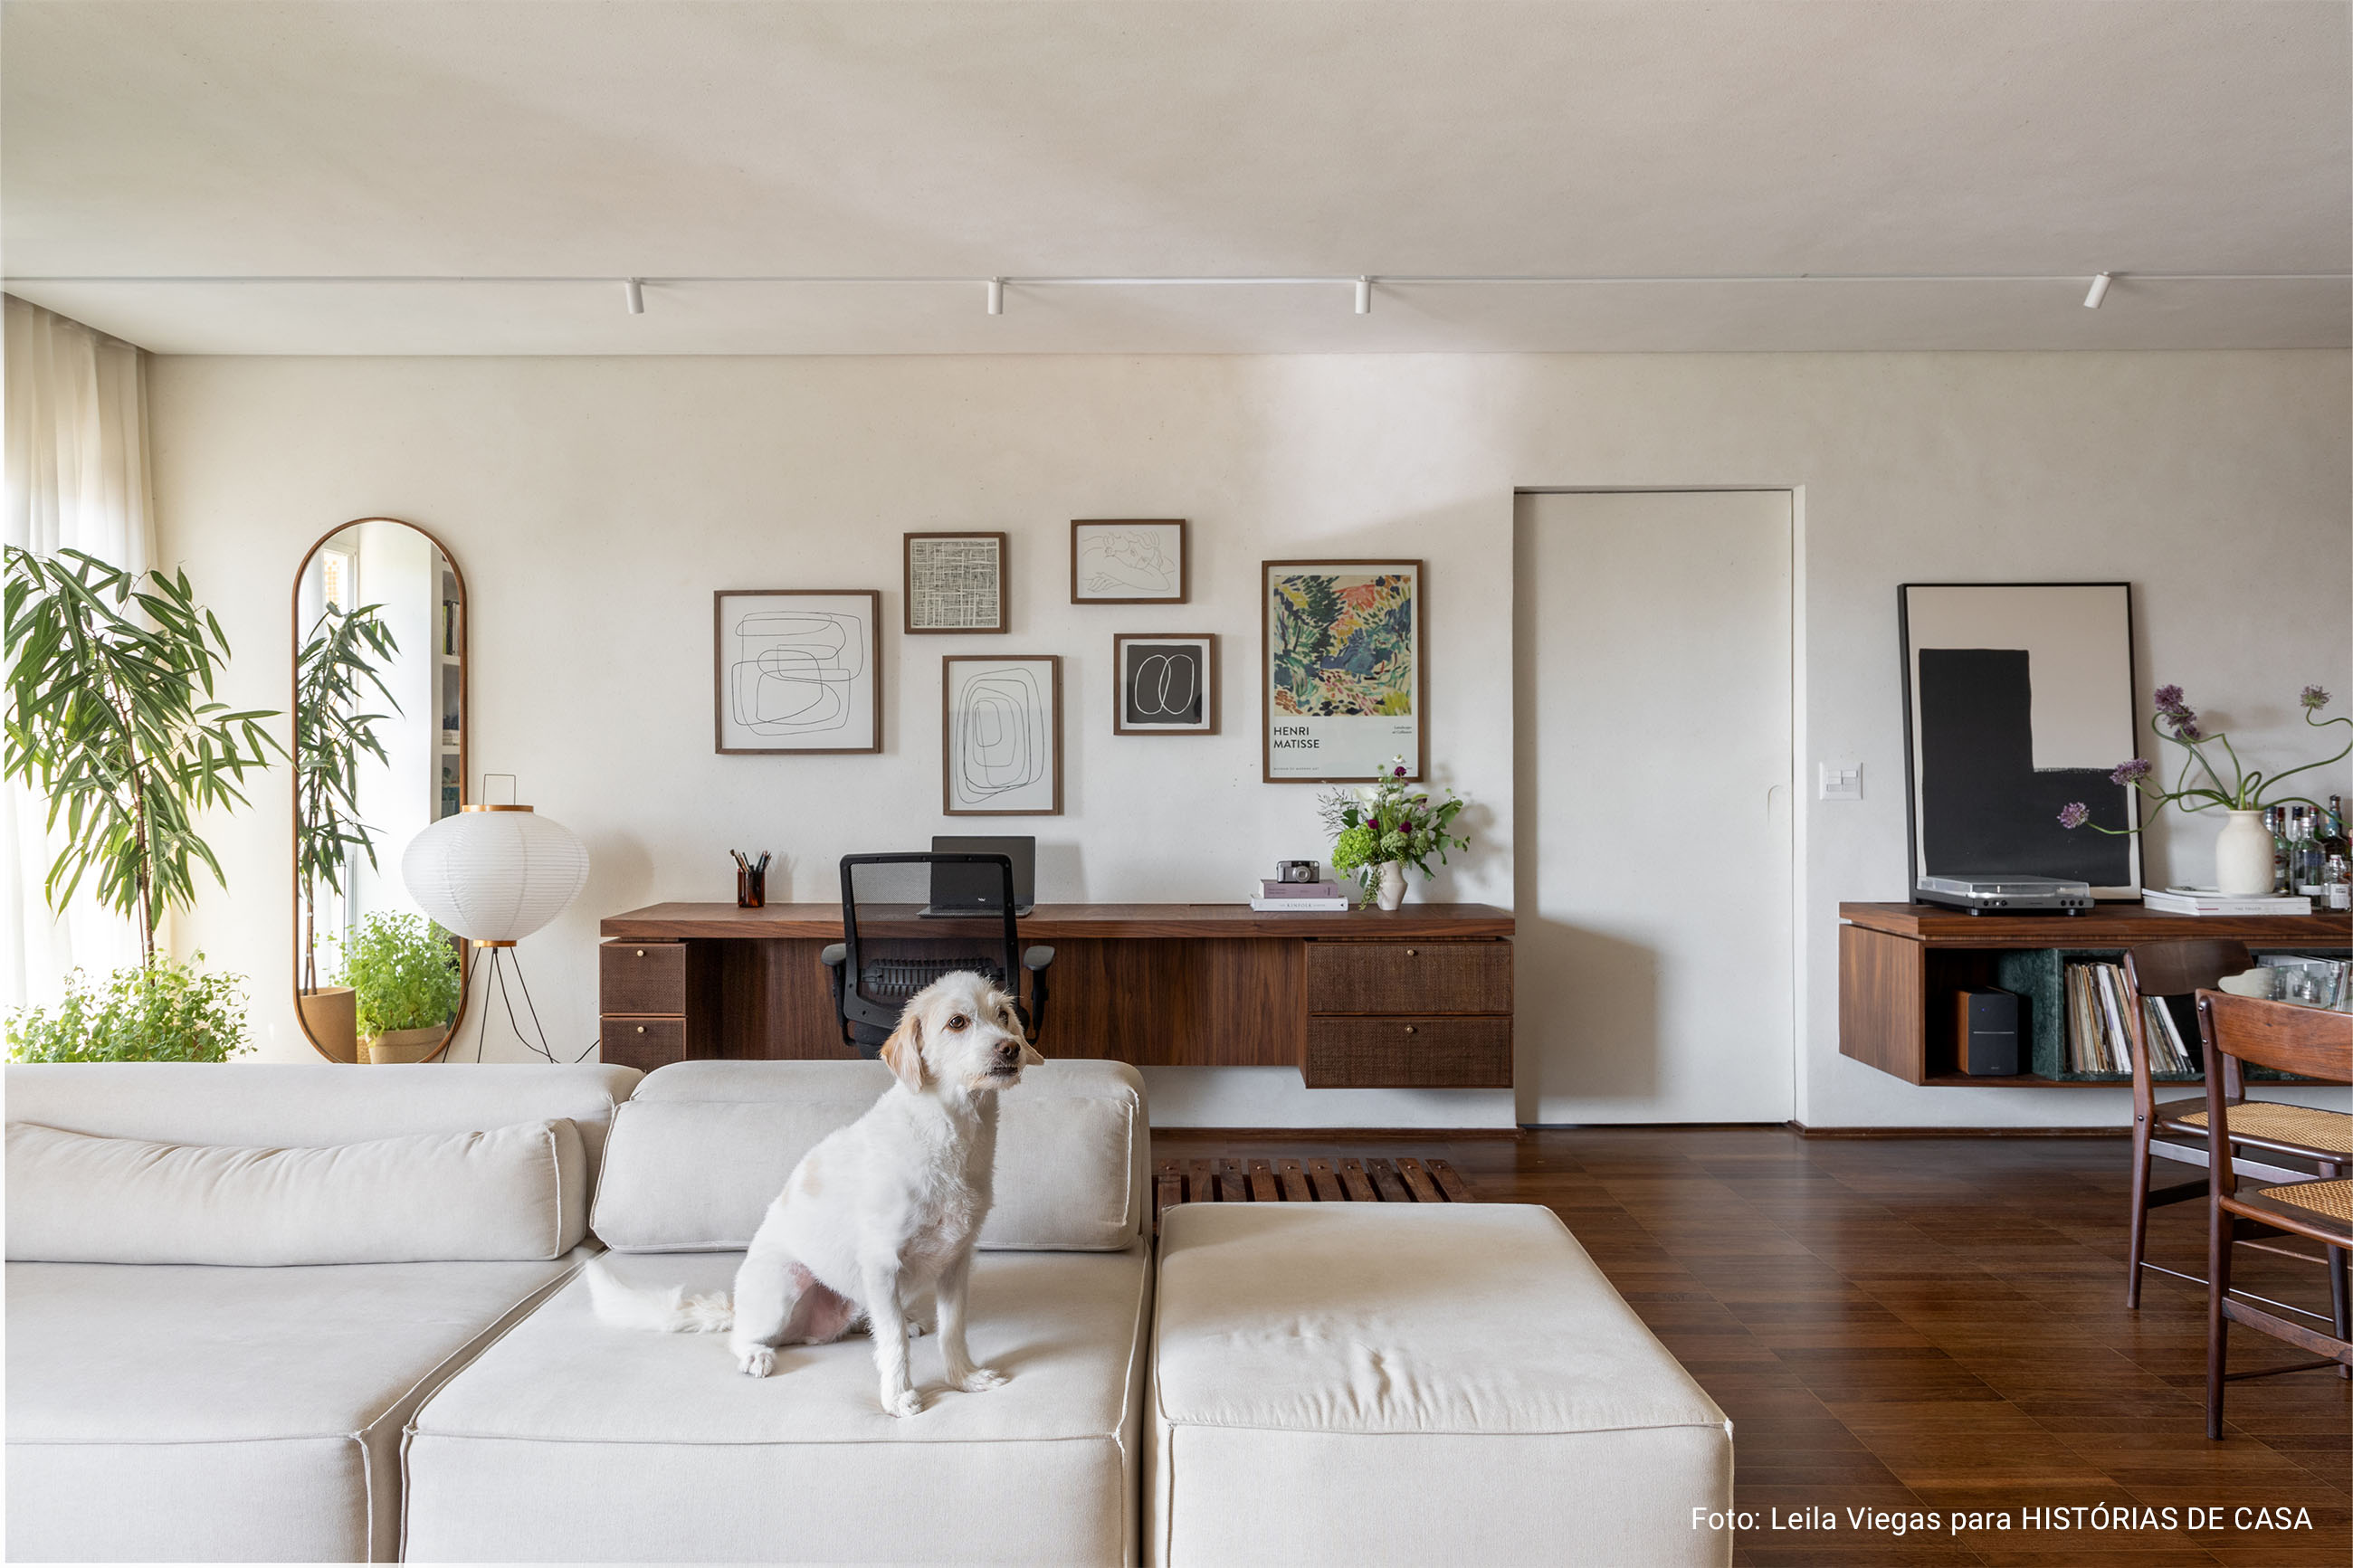 Apartamento com decoracão aconchegante e minimalista com cores neutras e quadros nas paredes.